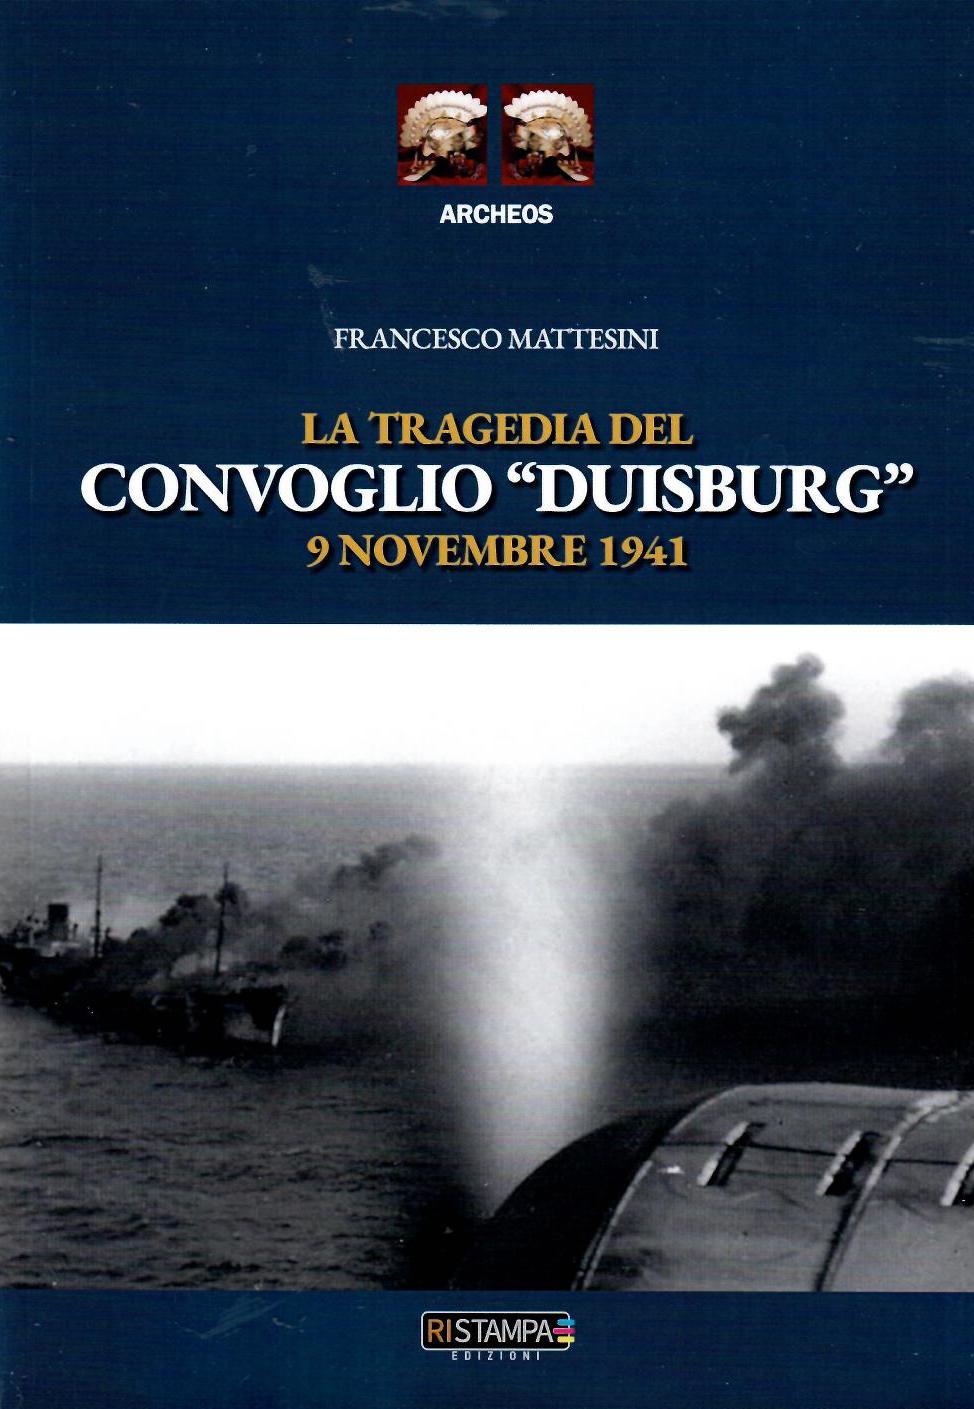 La tragedia del convoglio “Duisburg” 9 novembre 1941